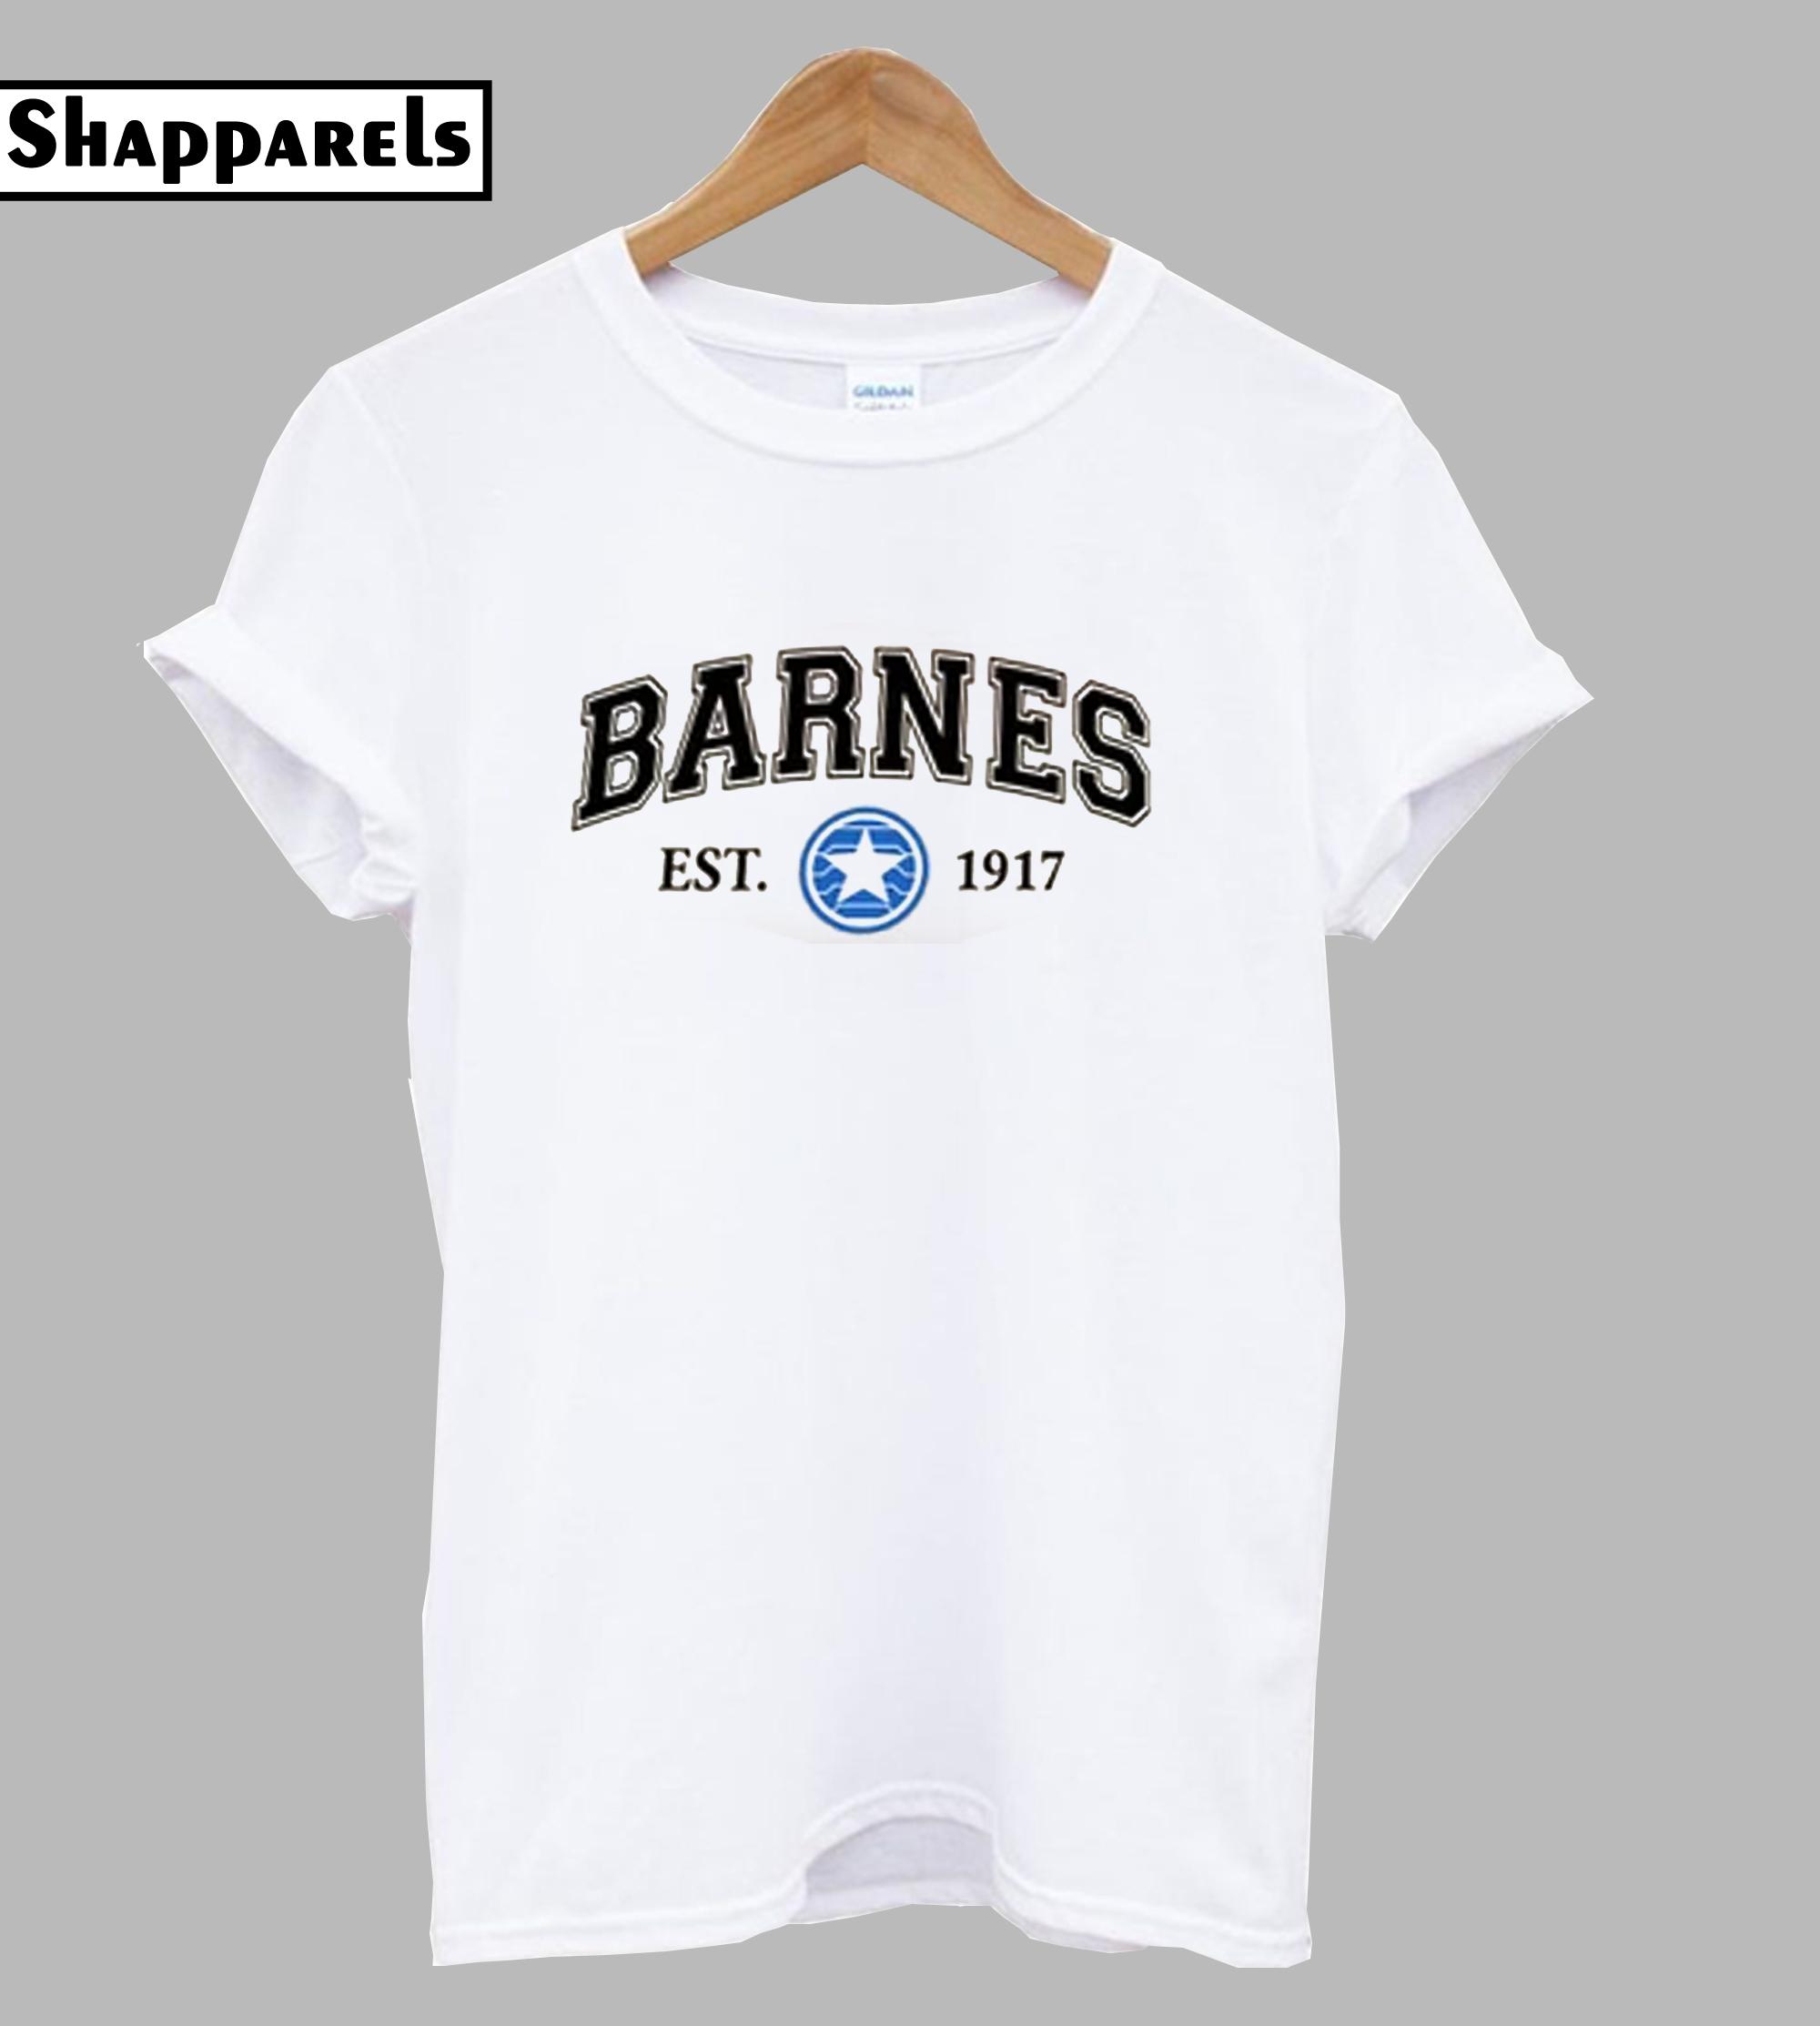 Super Hero Barnes T-Shirt